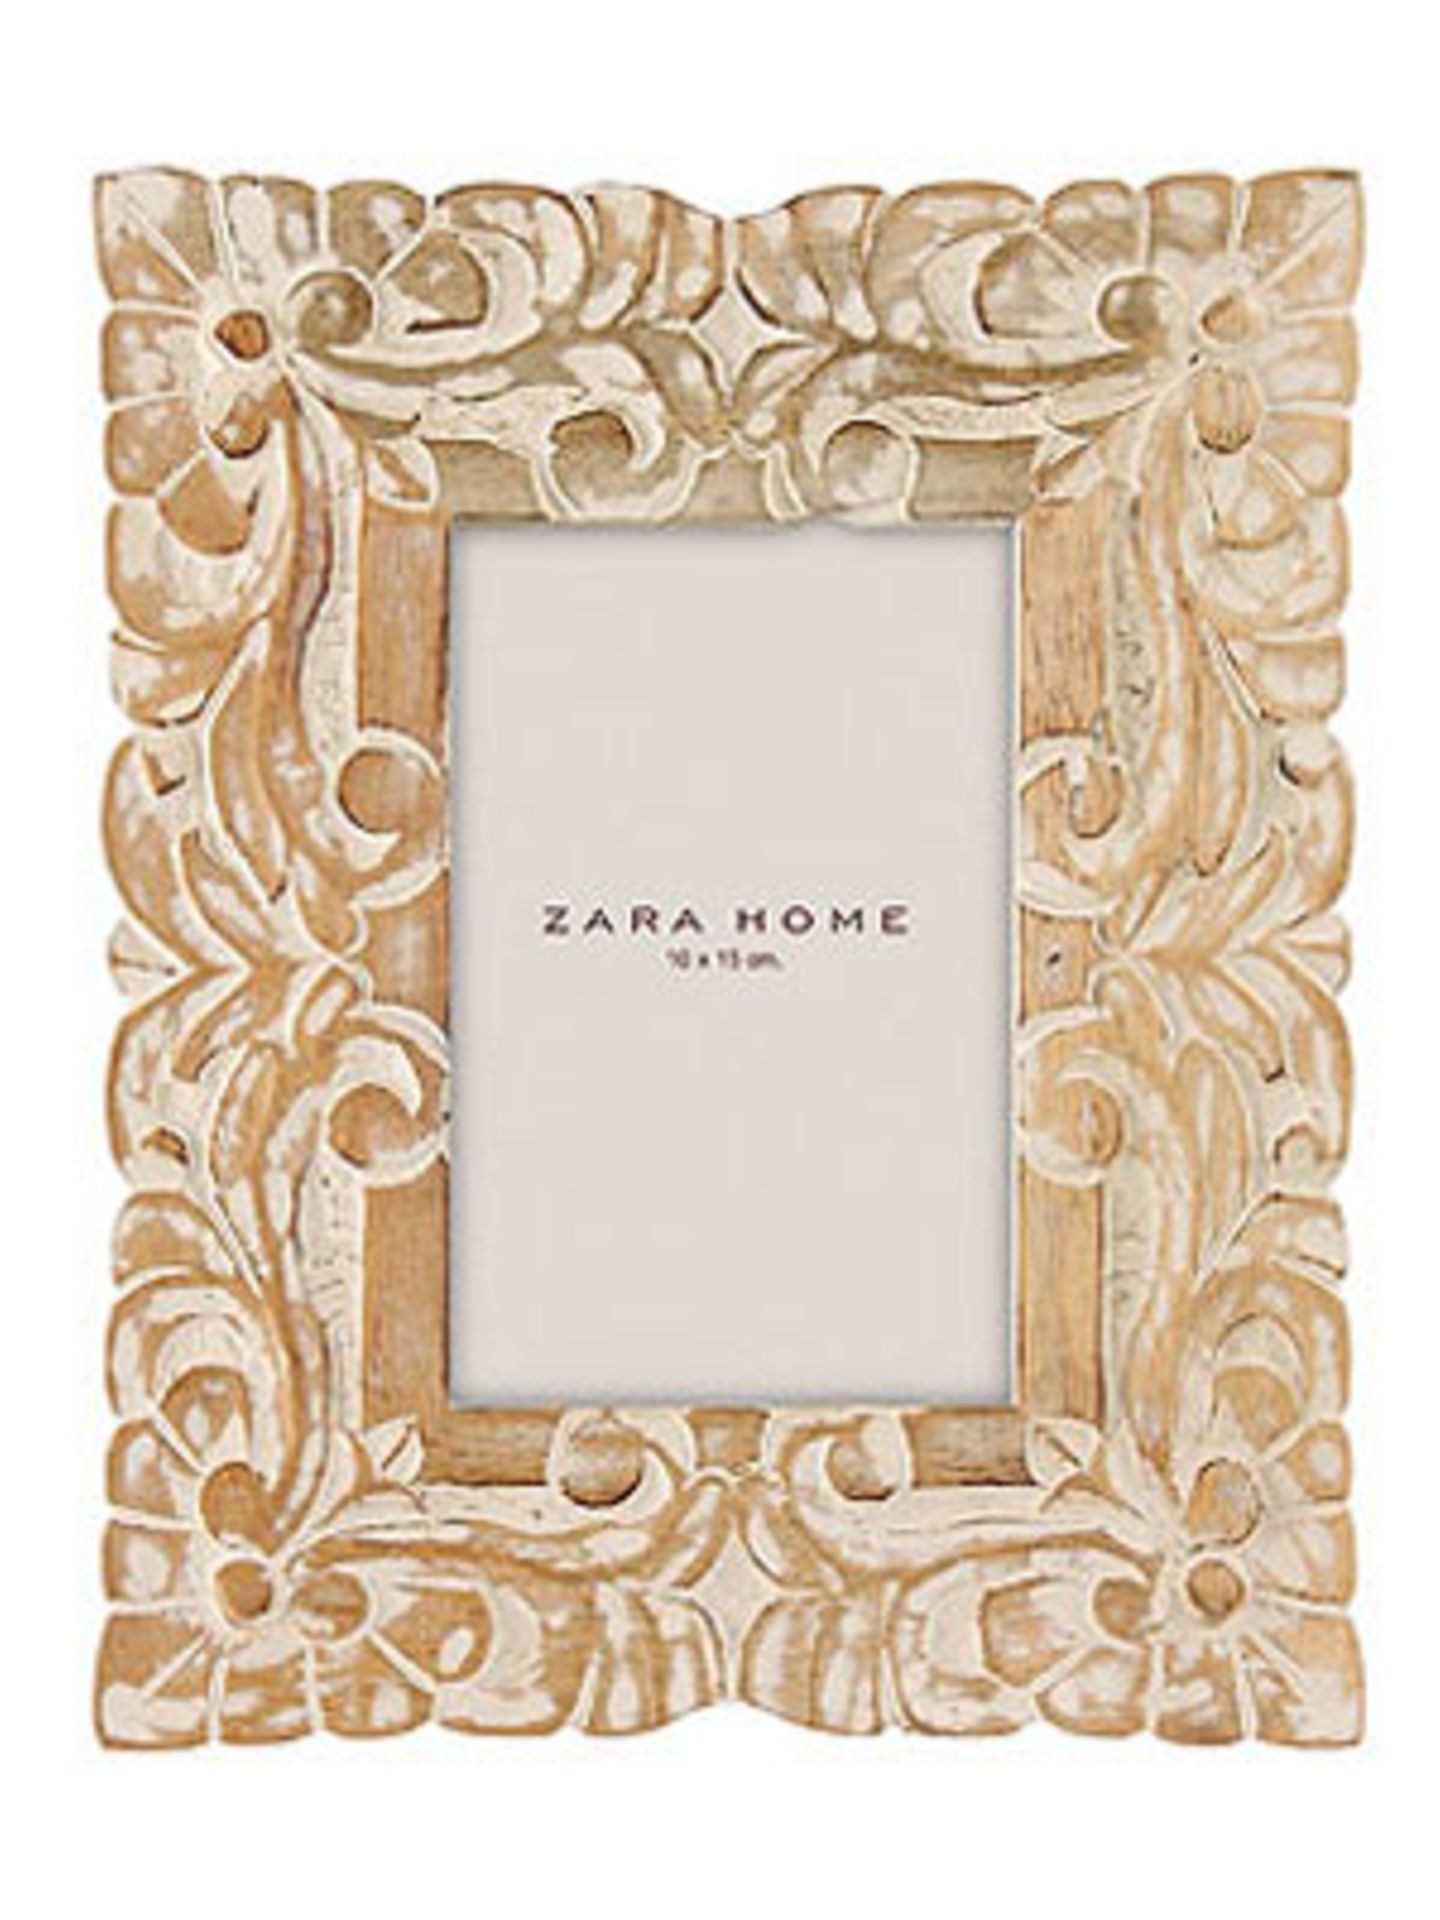 Zara Home Holzrahmen "Pedra" für Fotos im Format 10x15 cm von Zara Home, um 17 Euro. Über www.zarahome.com.